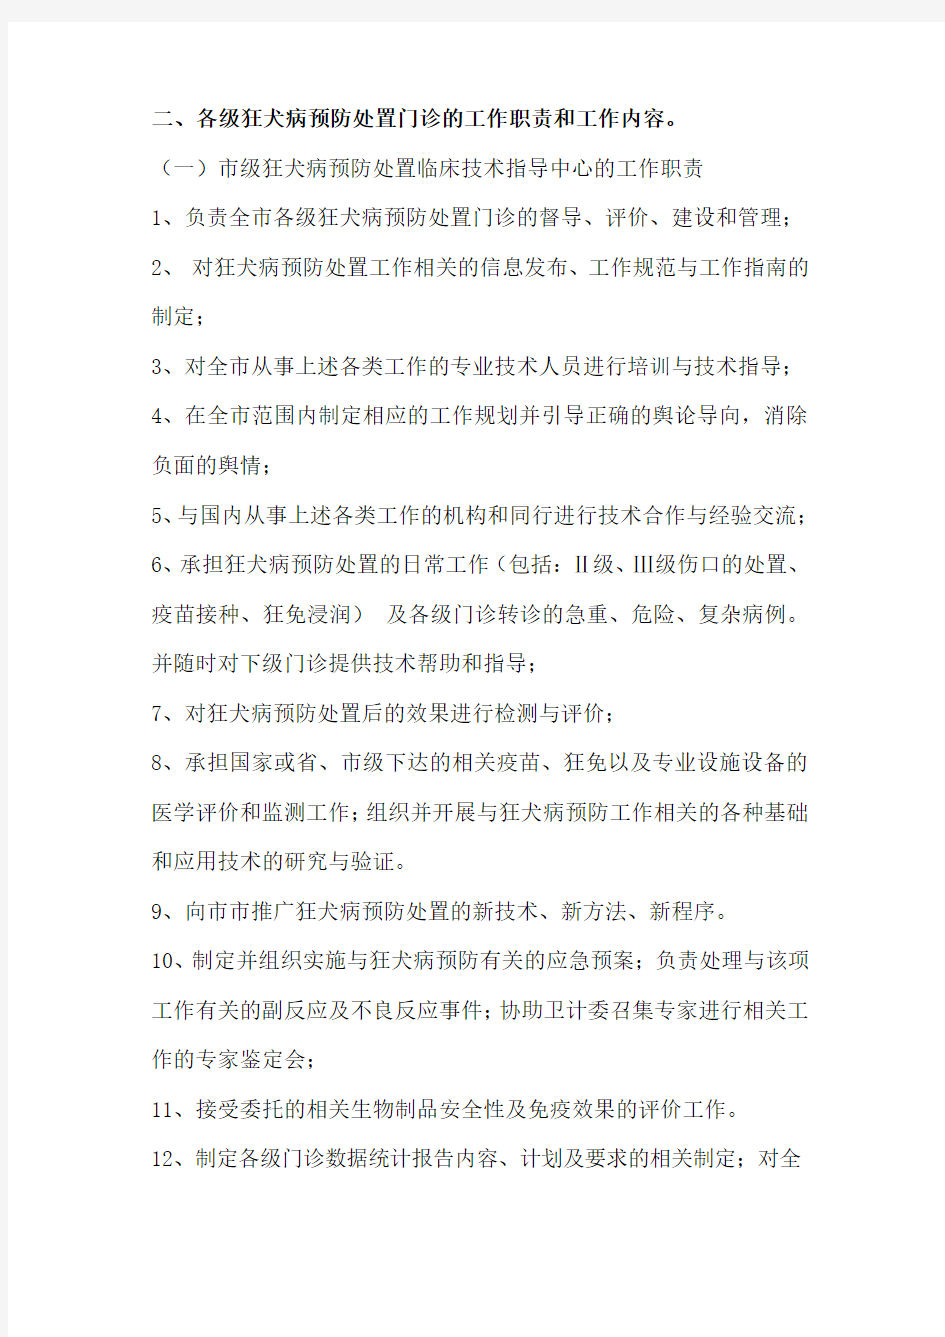 武汉市狂犬病暴露预防处置门诊建设标准与管理办法 (1)